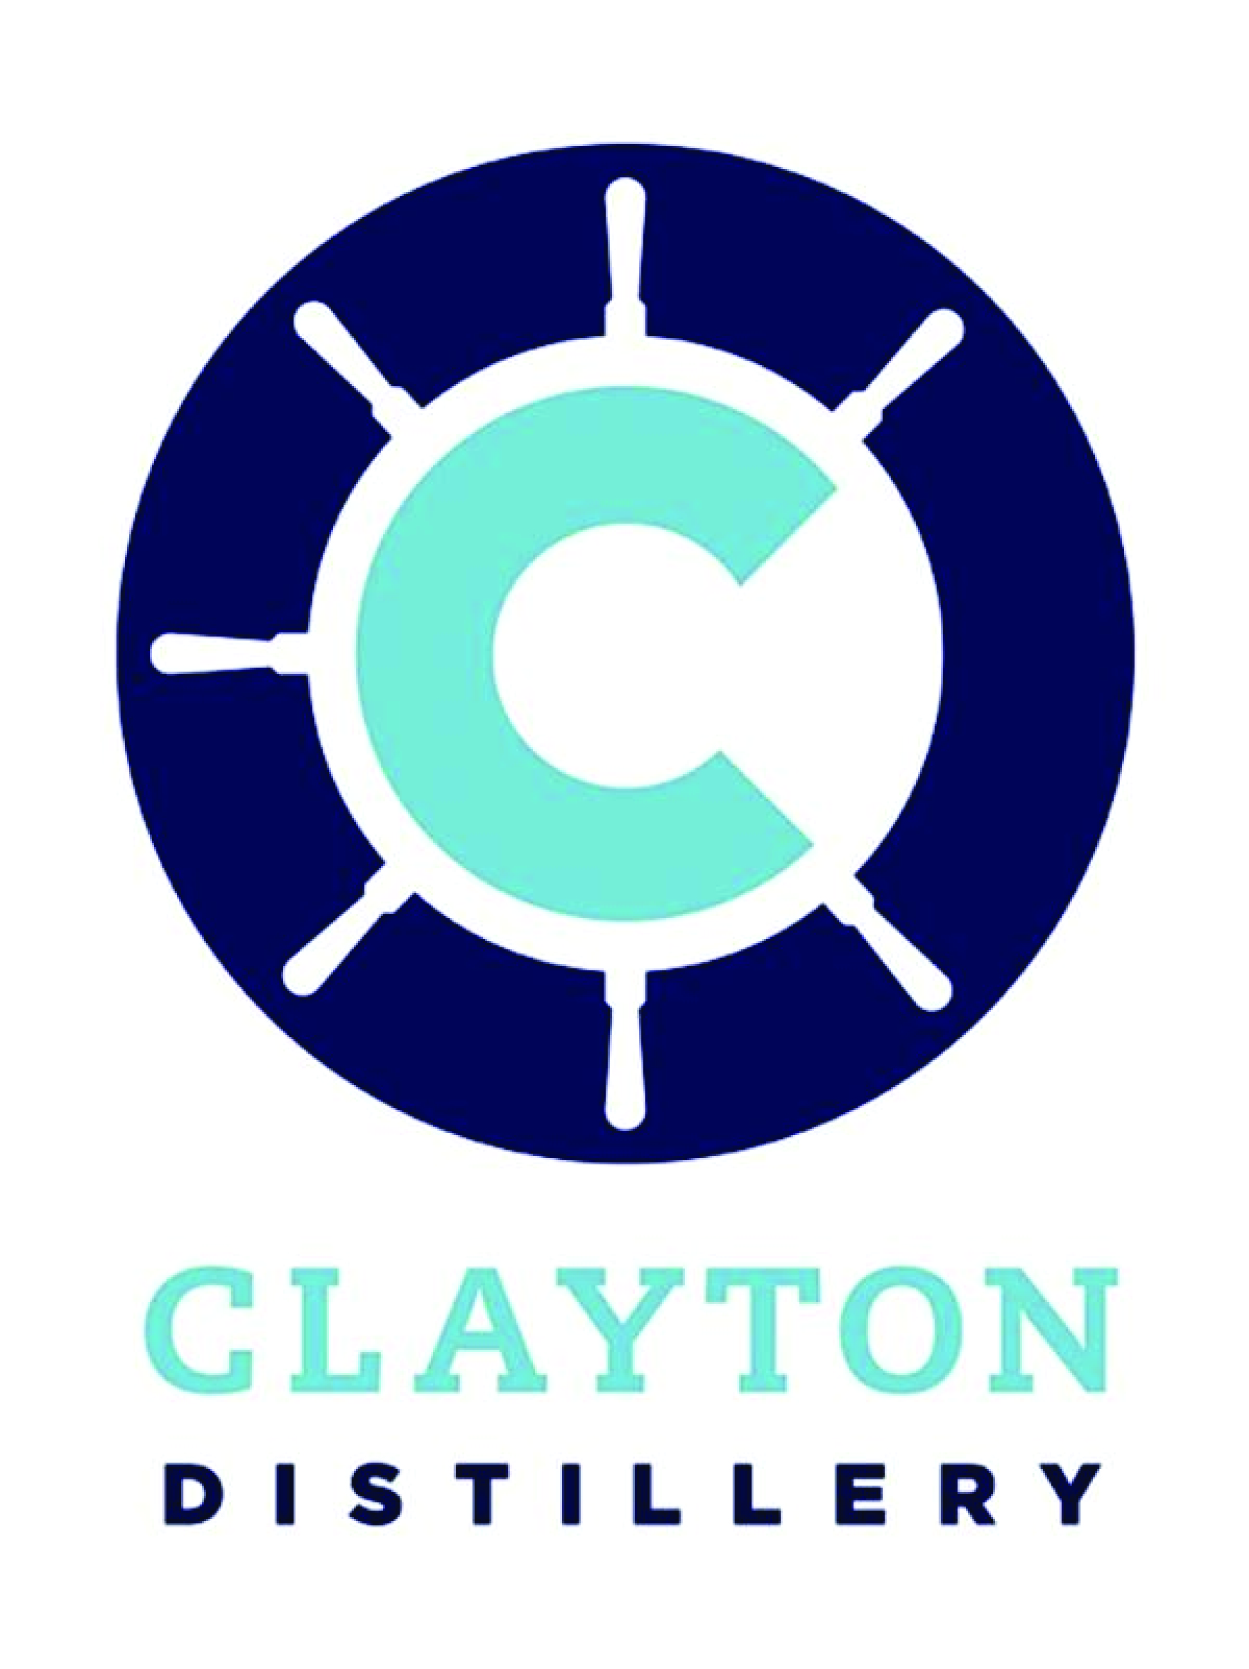 Clayton Distillery LLC